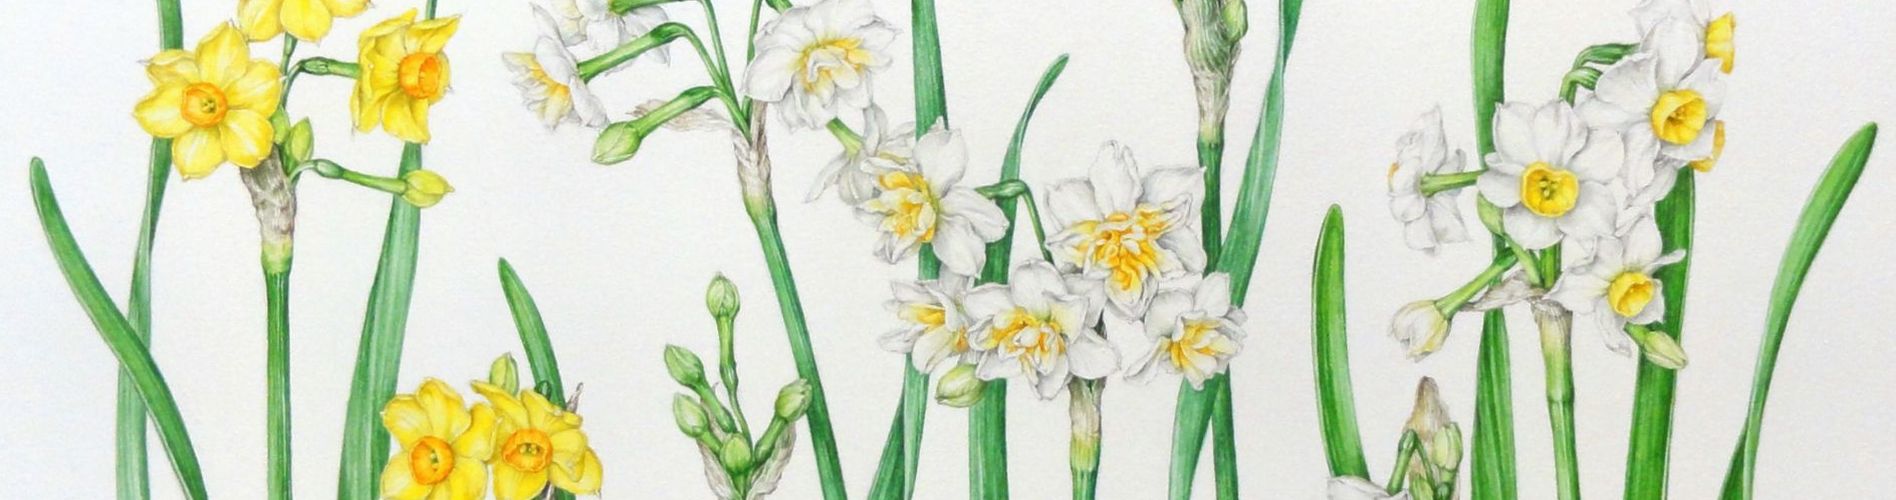 花の棲み家ーボタニカルアート | ボタニカルアート（植物画）は植物のありのままの色や形を精密に描写した絵画です。植物 や絵画を愛好される方にご覧いただければ幸いです。